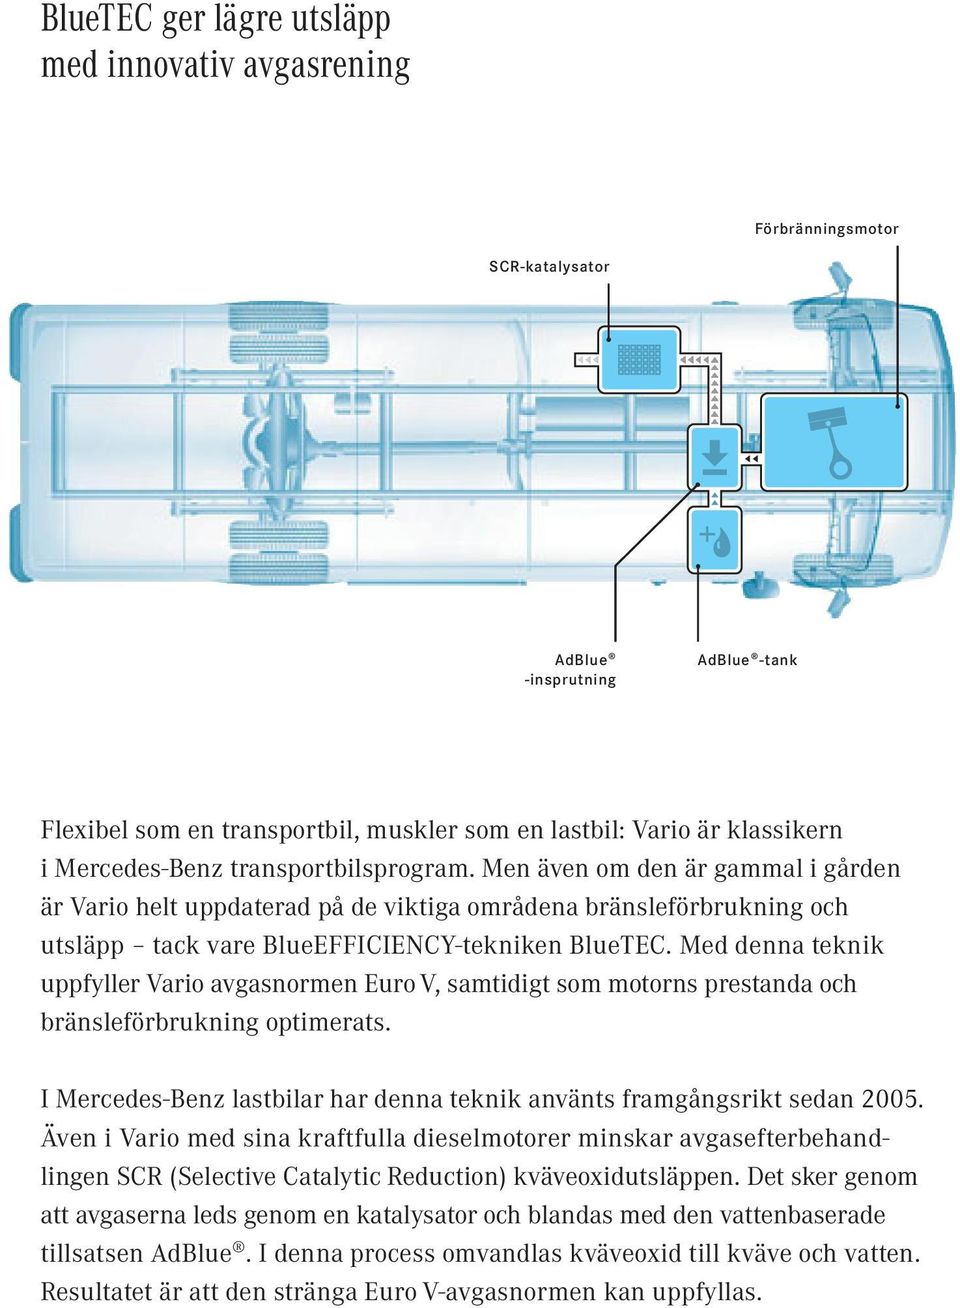 Med denna teknik uppfyller Vario avgasnormen Euro V, samtidigt som motorns prestanda och bränsleförbrukning optimerats. I Mercedes-Benz lastbilar har denna teknik använts framgångsrikt sedan 2005.